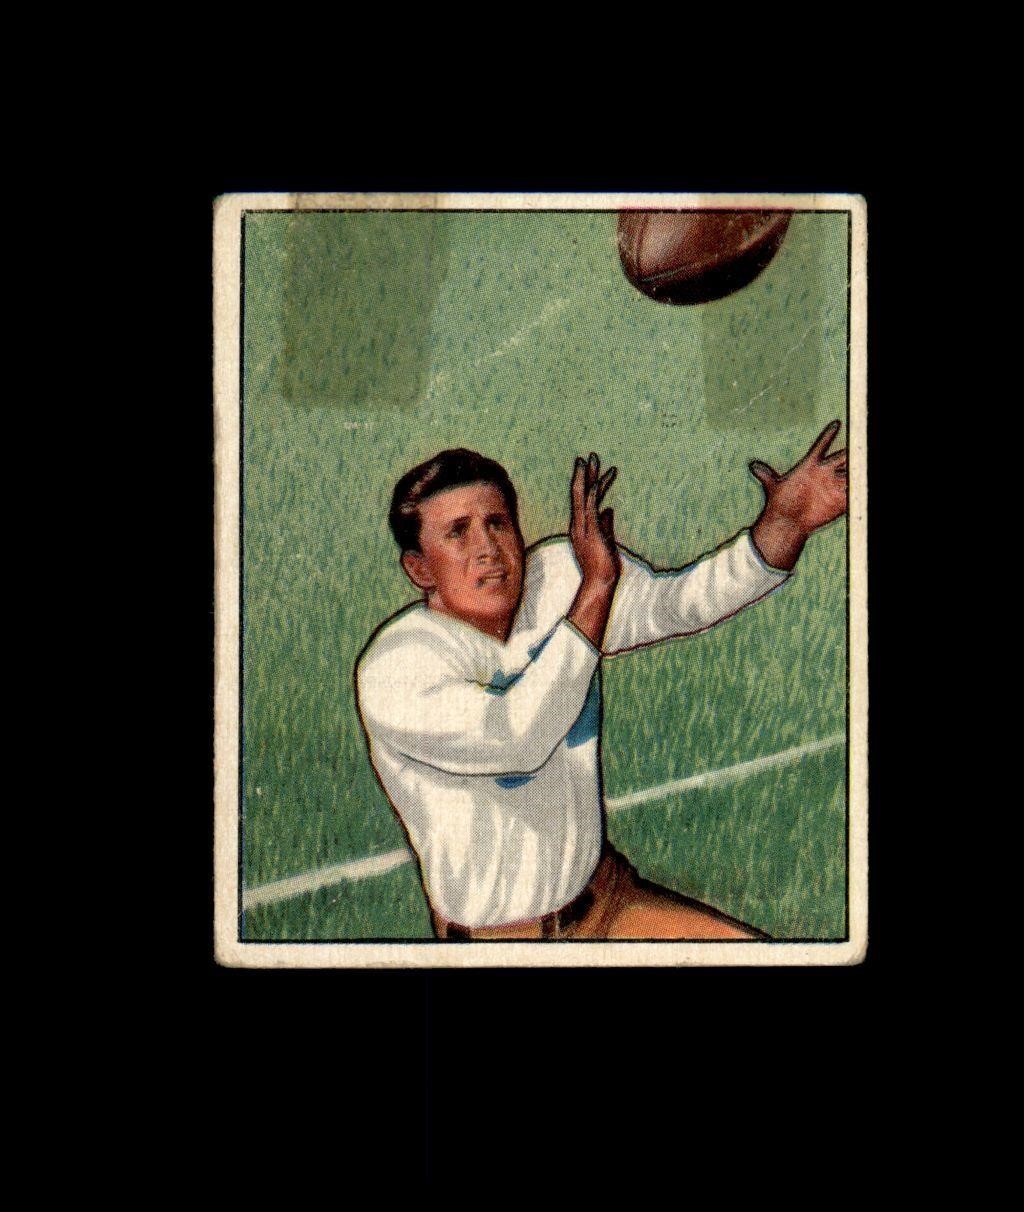 Vintage Sports Card Auction - Ends SUN 5/12 9PM CST